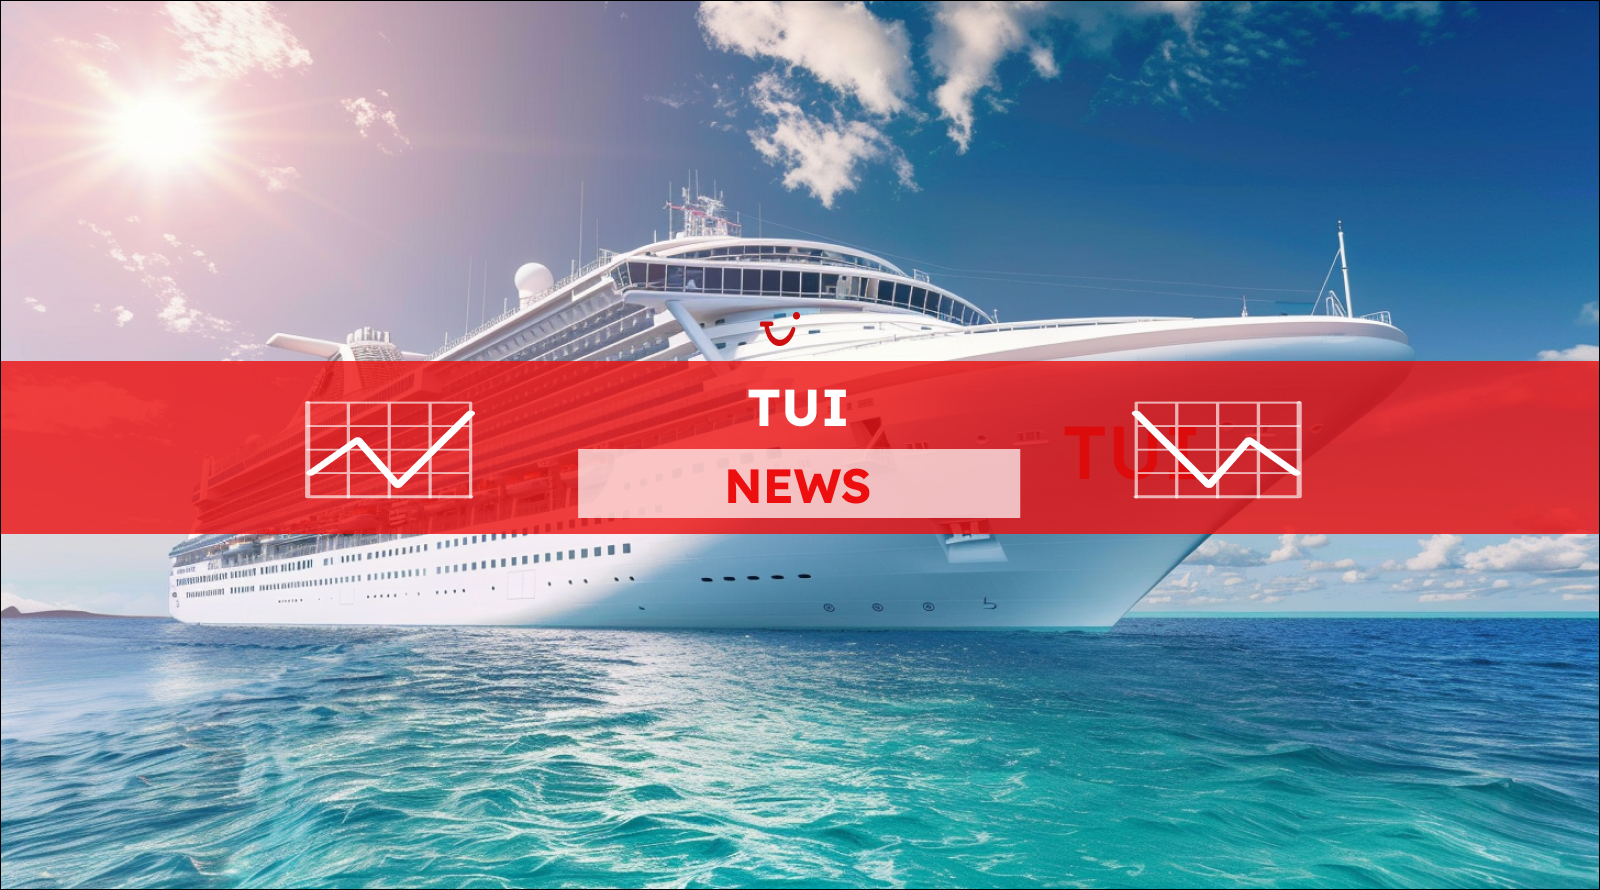 Ein Kreuzfahrtschiff auf dem Wasser in Nahaufnahme, mit einem TUI NEWS Banner.